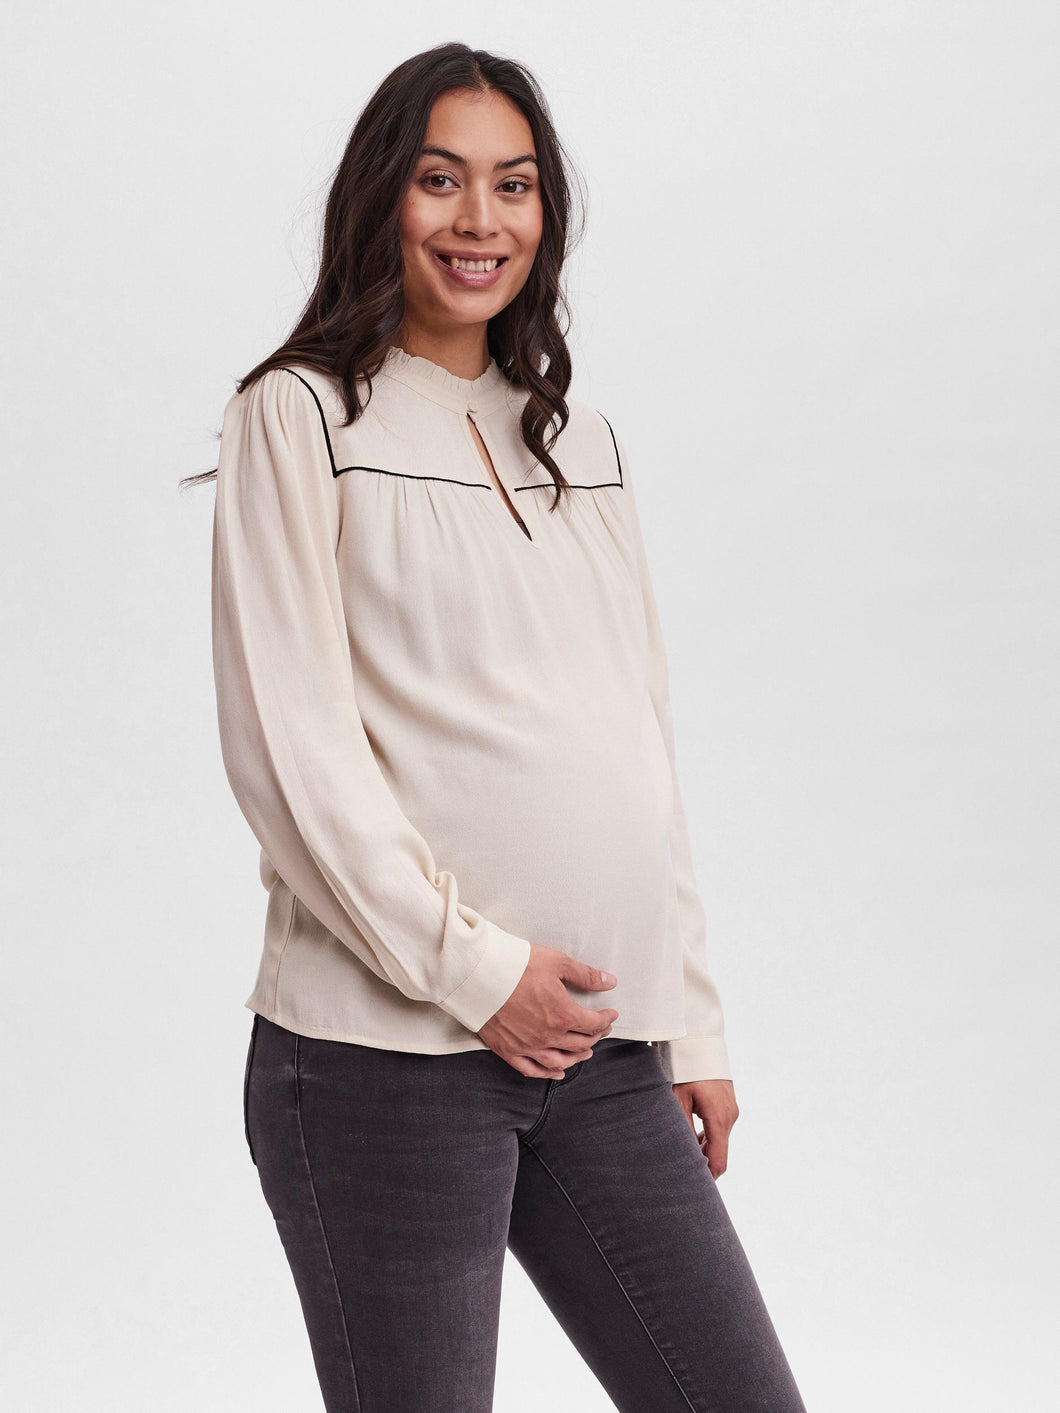 Mutterkleid Umstandsbluse aus nachhaltiger Viskose in creme von Vero Moda Maternity mit Stehkragen